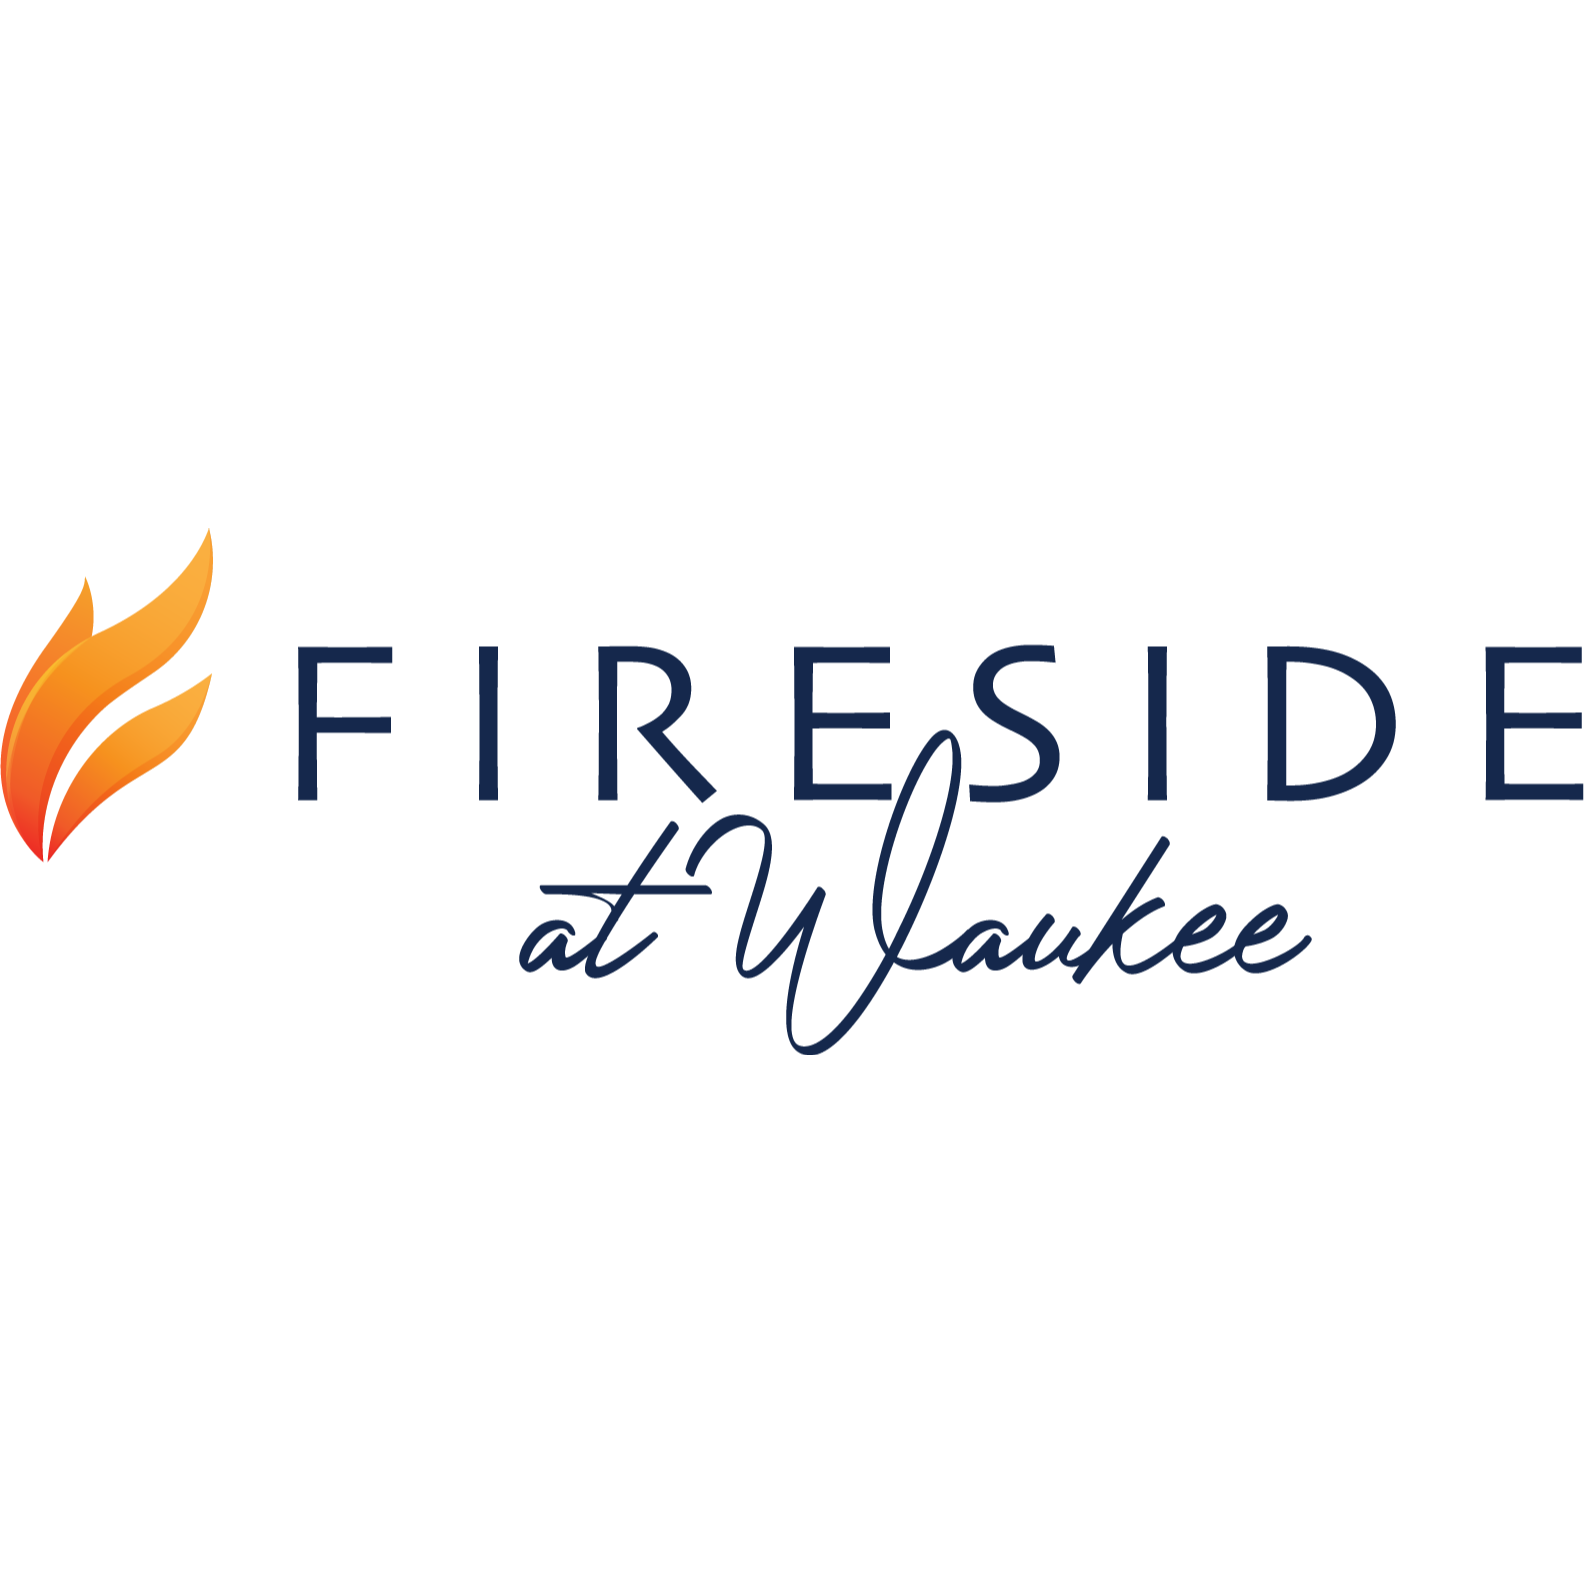 Fireside at Waukee